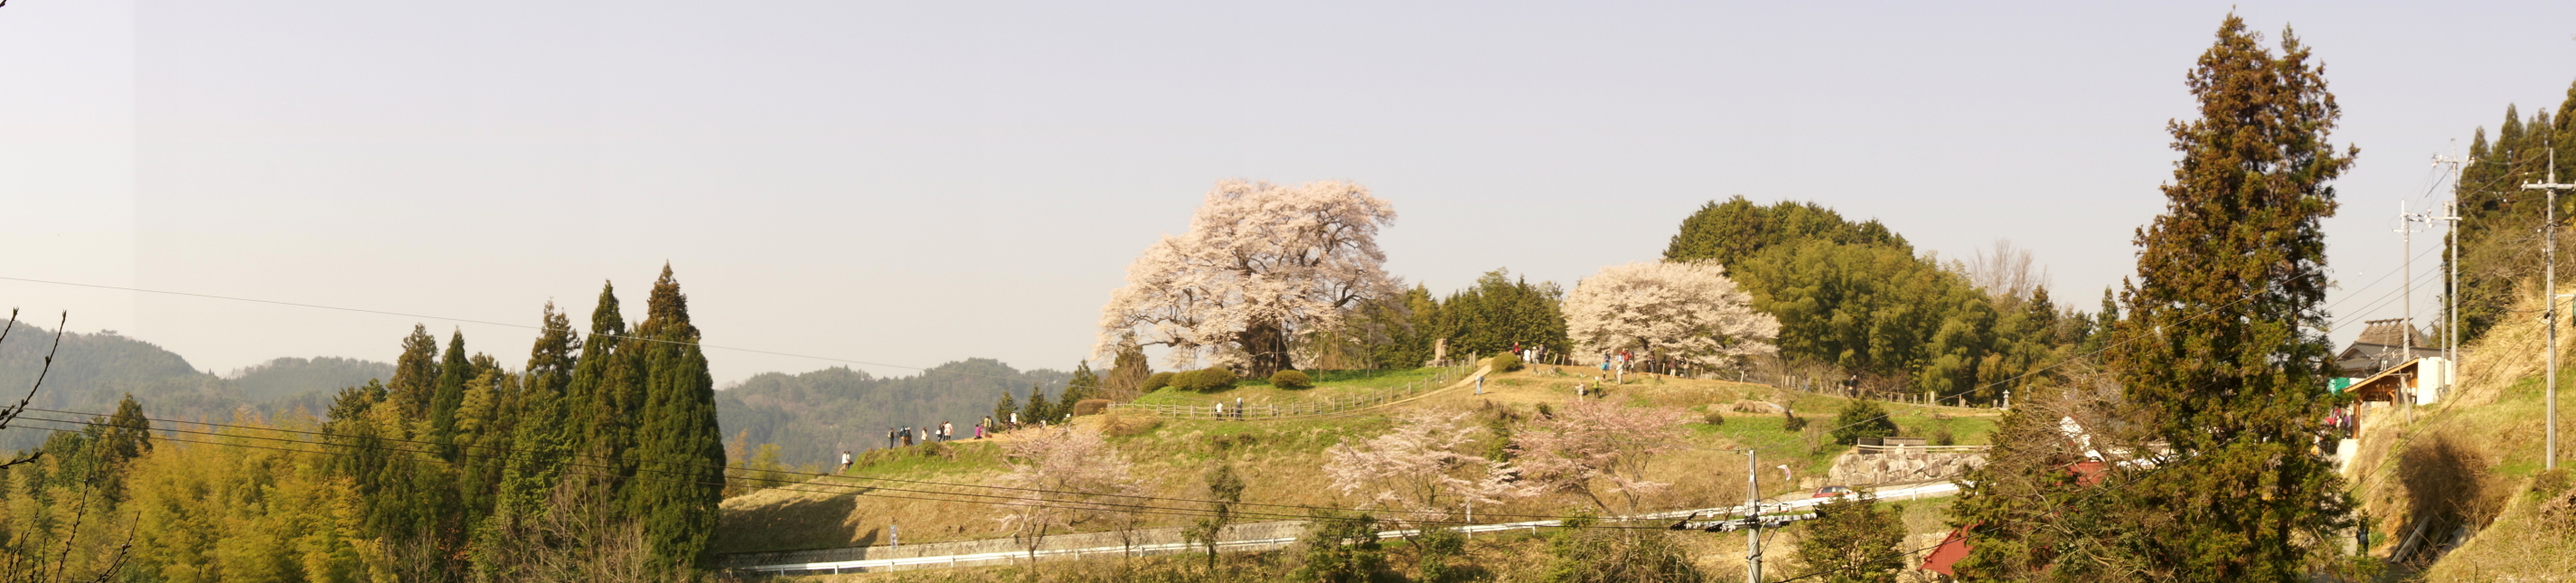 daigo-zakura-panorama